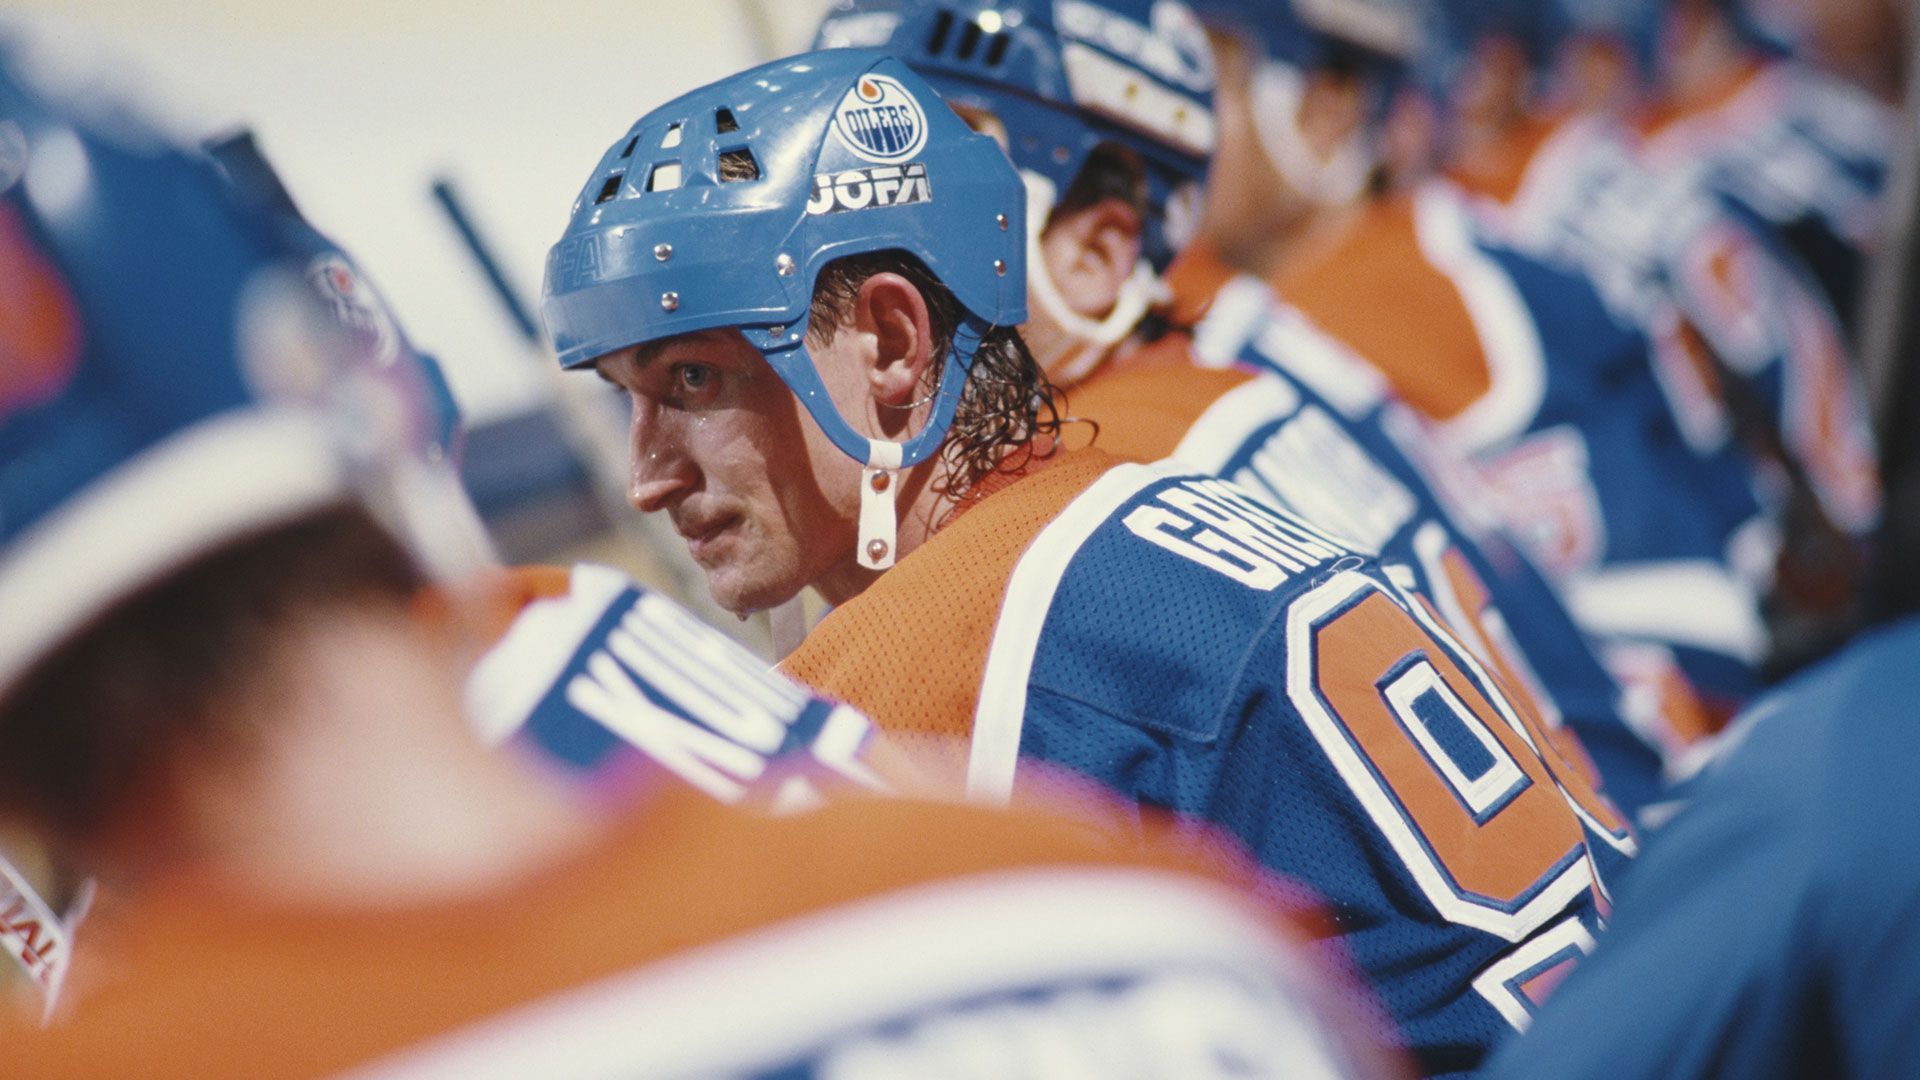 
                <strong>Wayne Gretzky: Der GOAT der NHL</strong><br>
                Das Beste kommt bekanntlich zum Schluss. Der wahrscheinlich größte Eishockeyspieler aller Zeiten, Wayne Gretzky, sorgte in seiner NHL-Laufbahn für eine Vielzahl an Rekorden. "The Great Gretzky" hielt zum Zeitpunkt seines Karriereendes 1999 insgesamt 61 Bestmarken. Der Kanadier hält bis heute unter anderem die Rekorde für die meisten Karrieretore insgesamt (1.016), während der regulären Saison (894) und in den Playoffs (122). Auch den Bestwert für die meisten Treffer in einer regulären Saison (92) gehören dem "GOAT". Die genannten Bestmarken hat Gretzky ebenfalls bei den Vorlagen inne, weshalb der viermalige Stanley-Cup-Sieger gleichzeitig auch bis heute die wichtigsten Punktestatistiken dominiert.
              